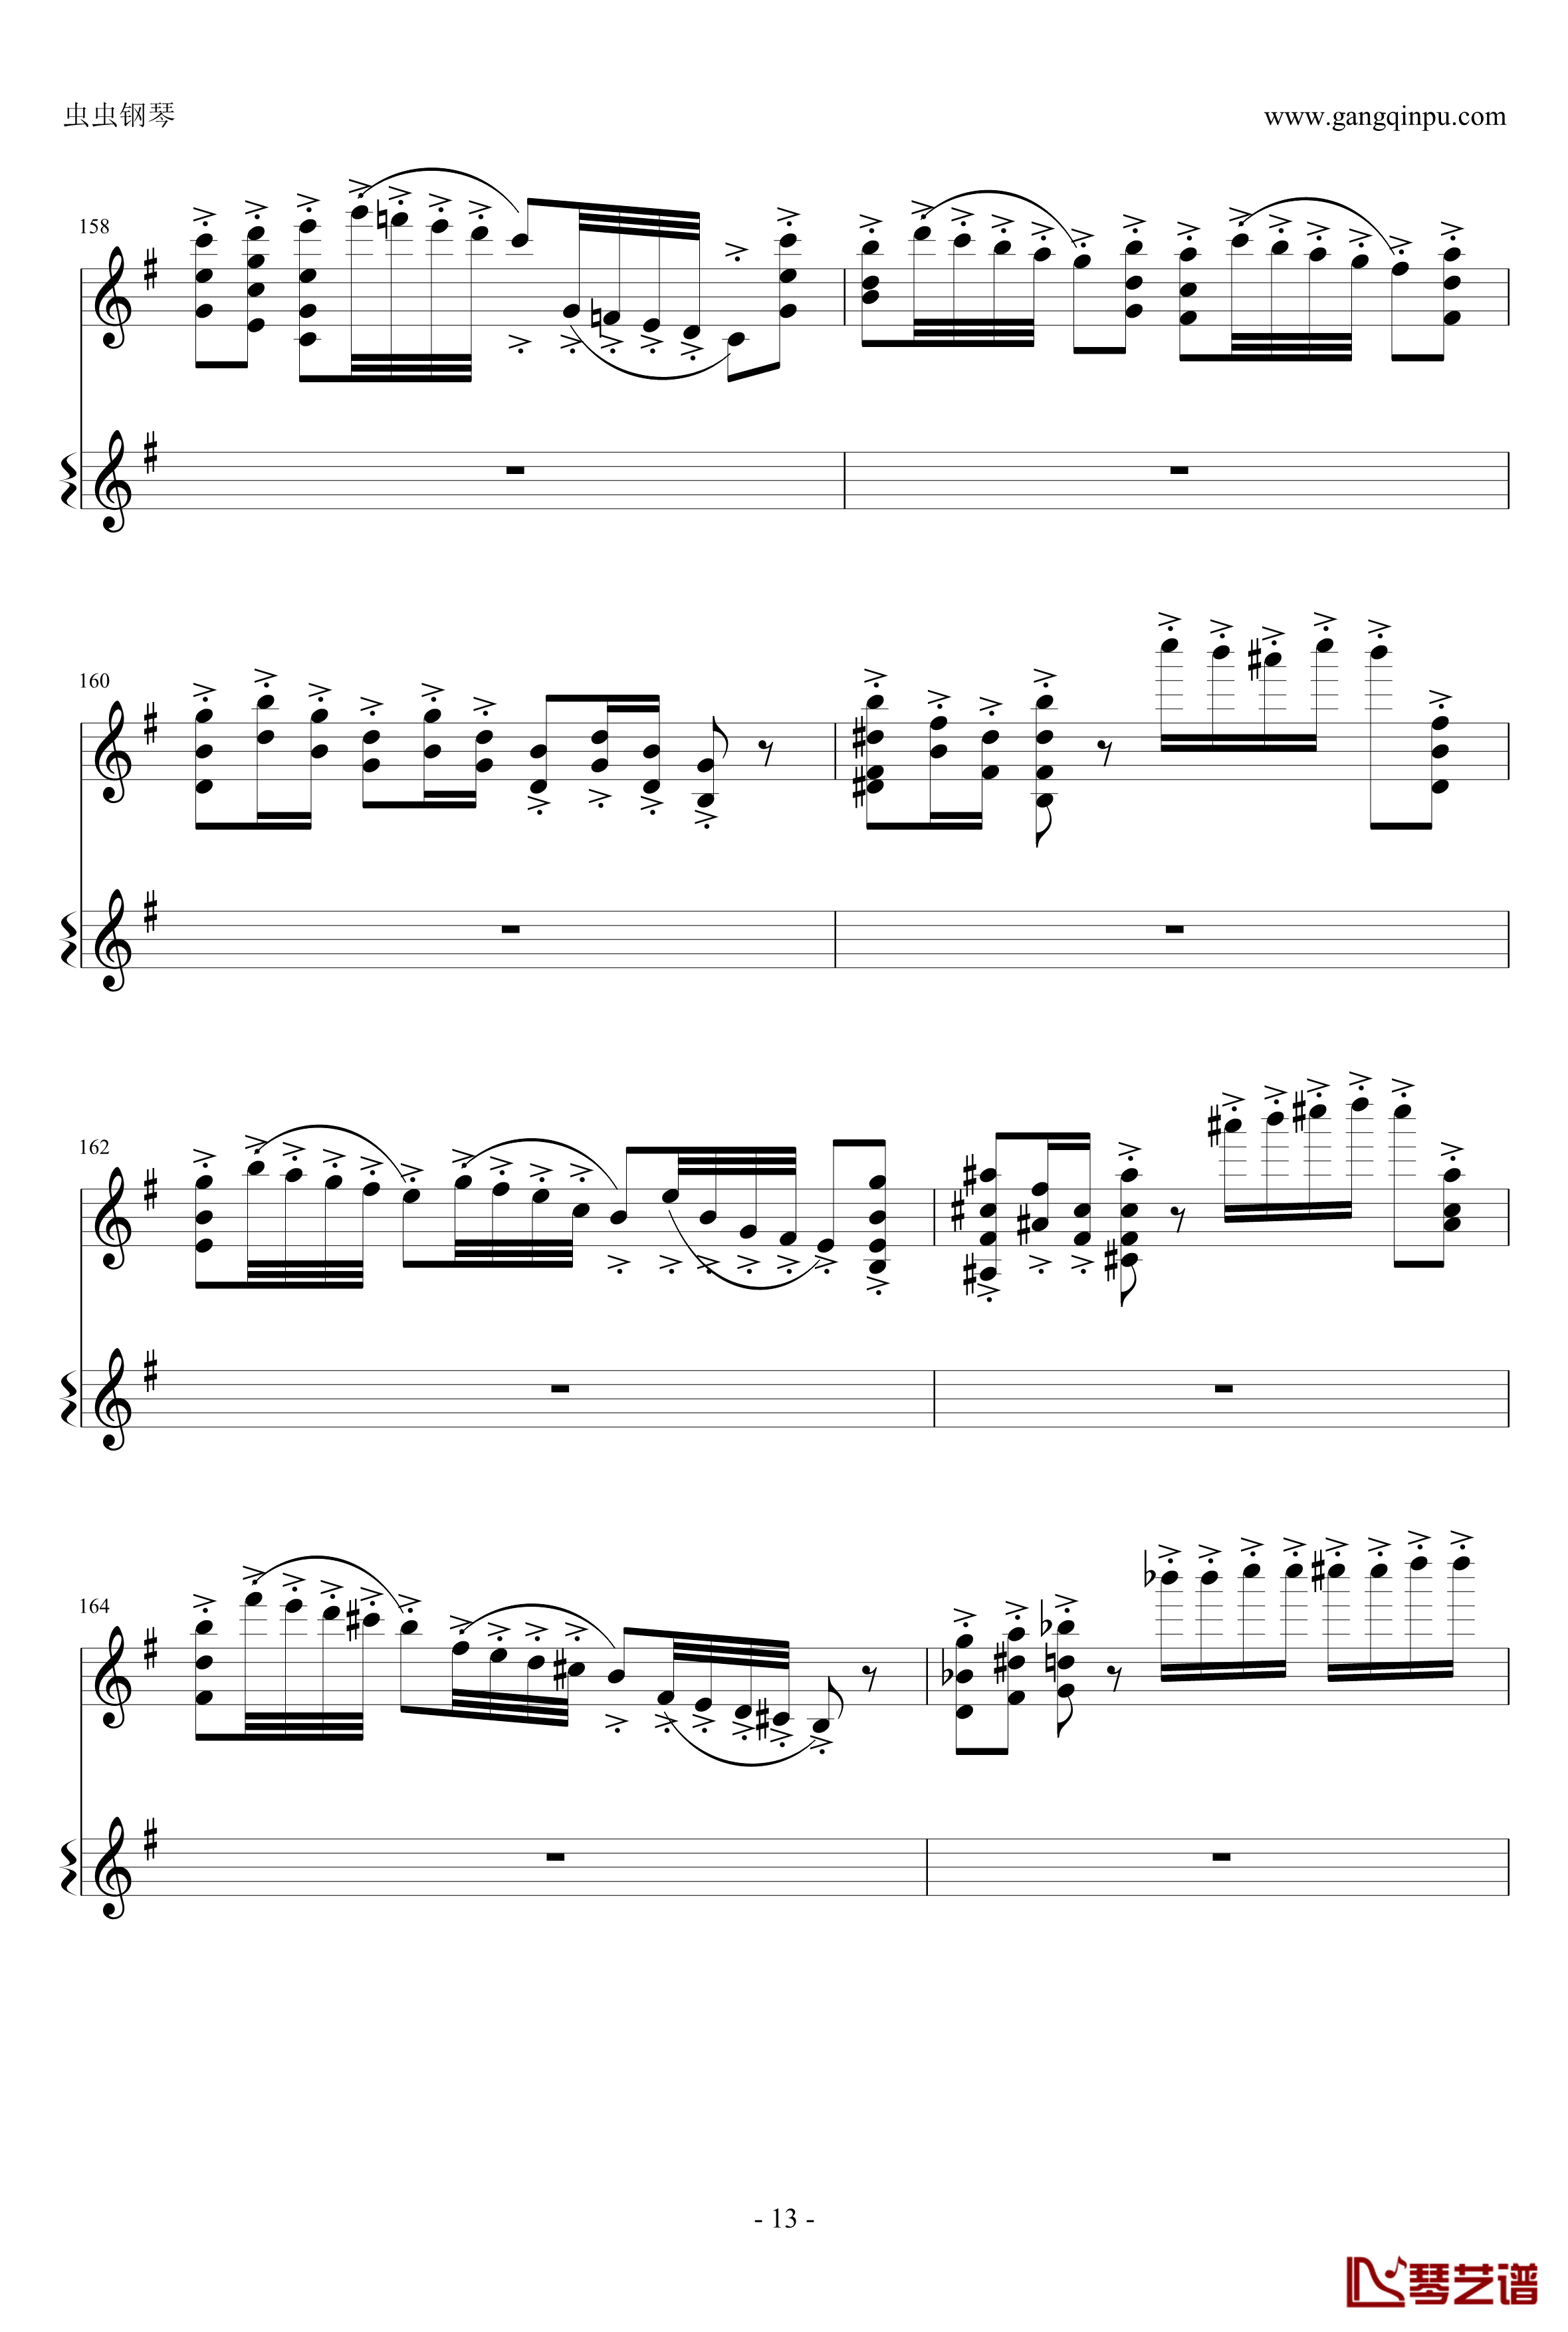 意大利国歌钢琴谱-变奏曲修改版-DXF13